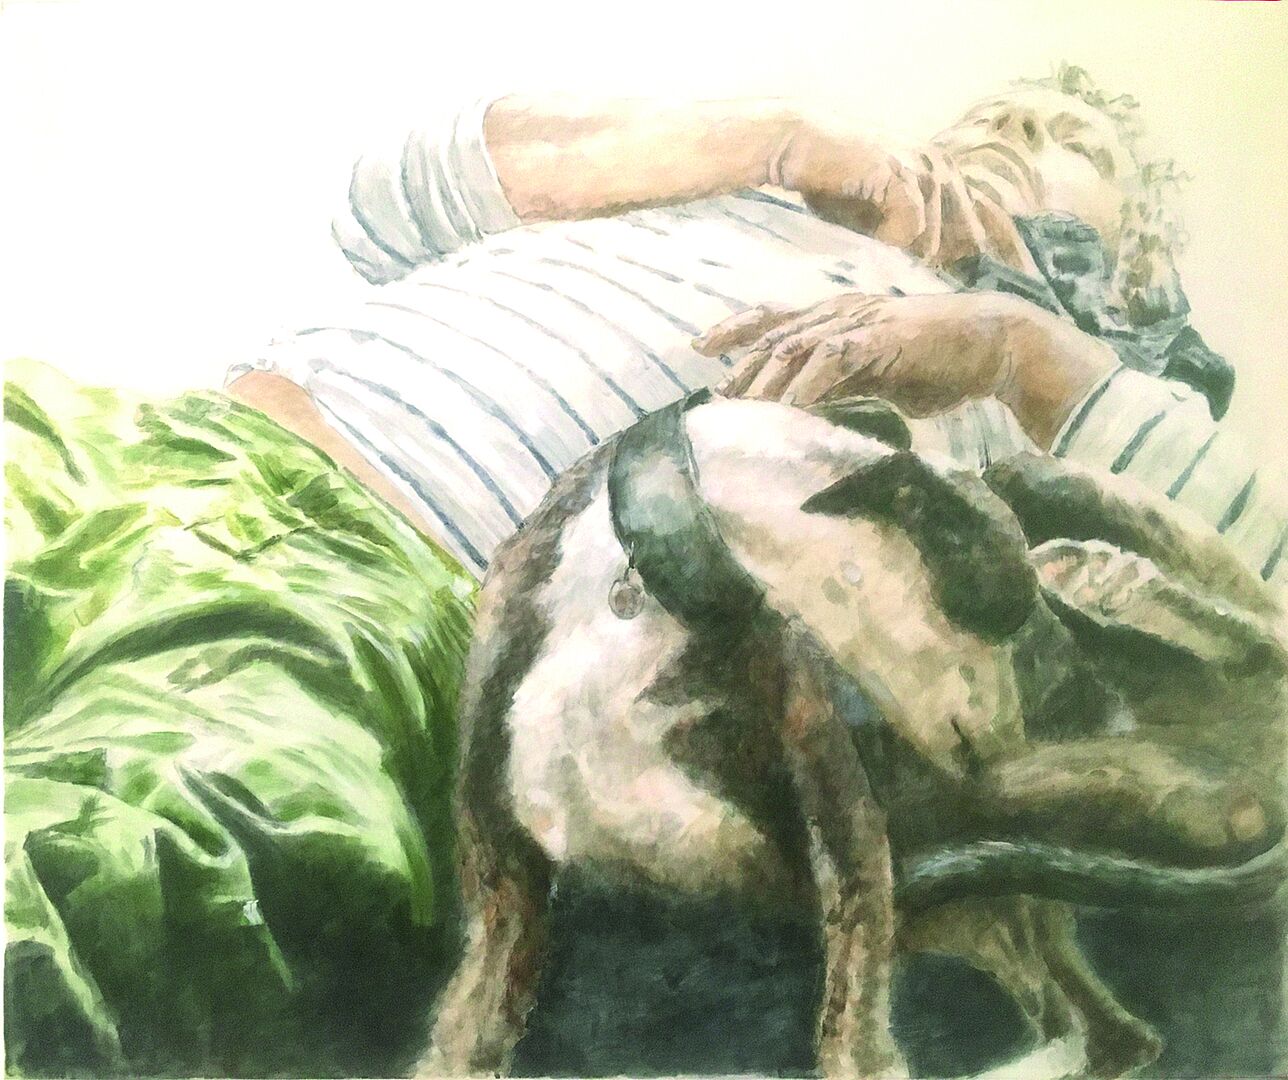 Aquarell Bild eines schlafenden Mannes in hellgrüner Hose und weißem Shirt mit schwarzen Querstreifen, an der linken Seite  unter seinem angewinkeltem Arm, schläft ein zusammengerollter Hunds  Ringelschirt